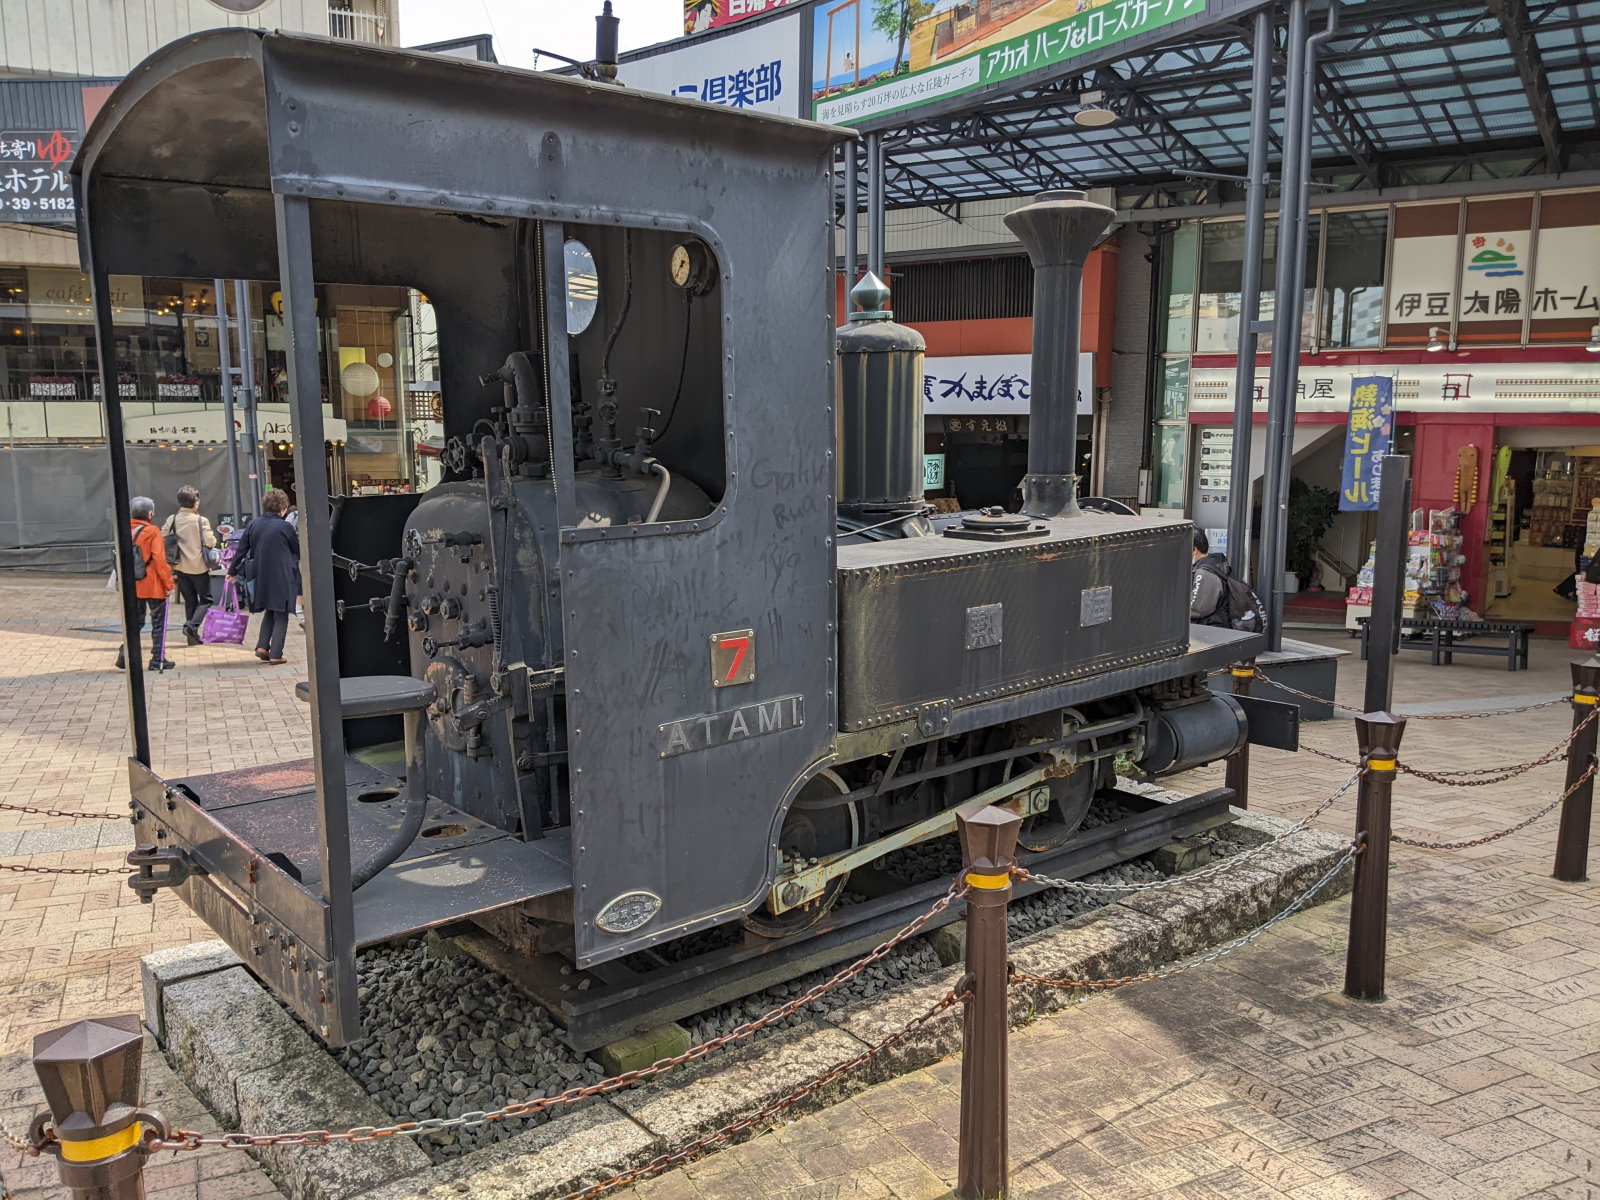 熱海駅前に飾られていた機関車